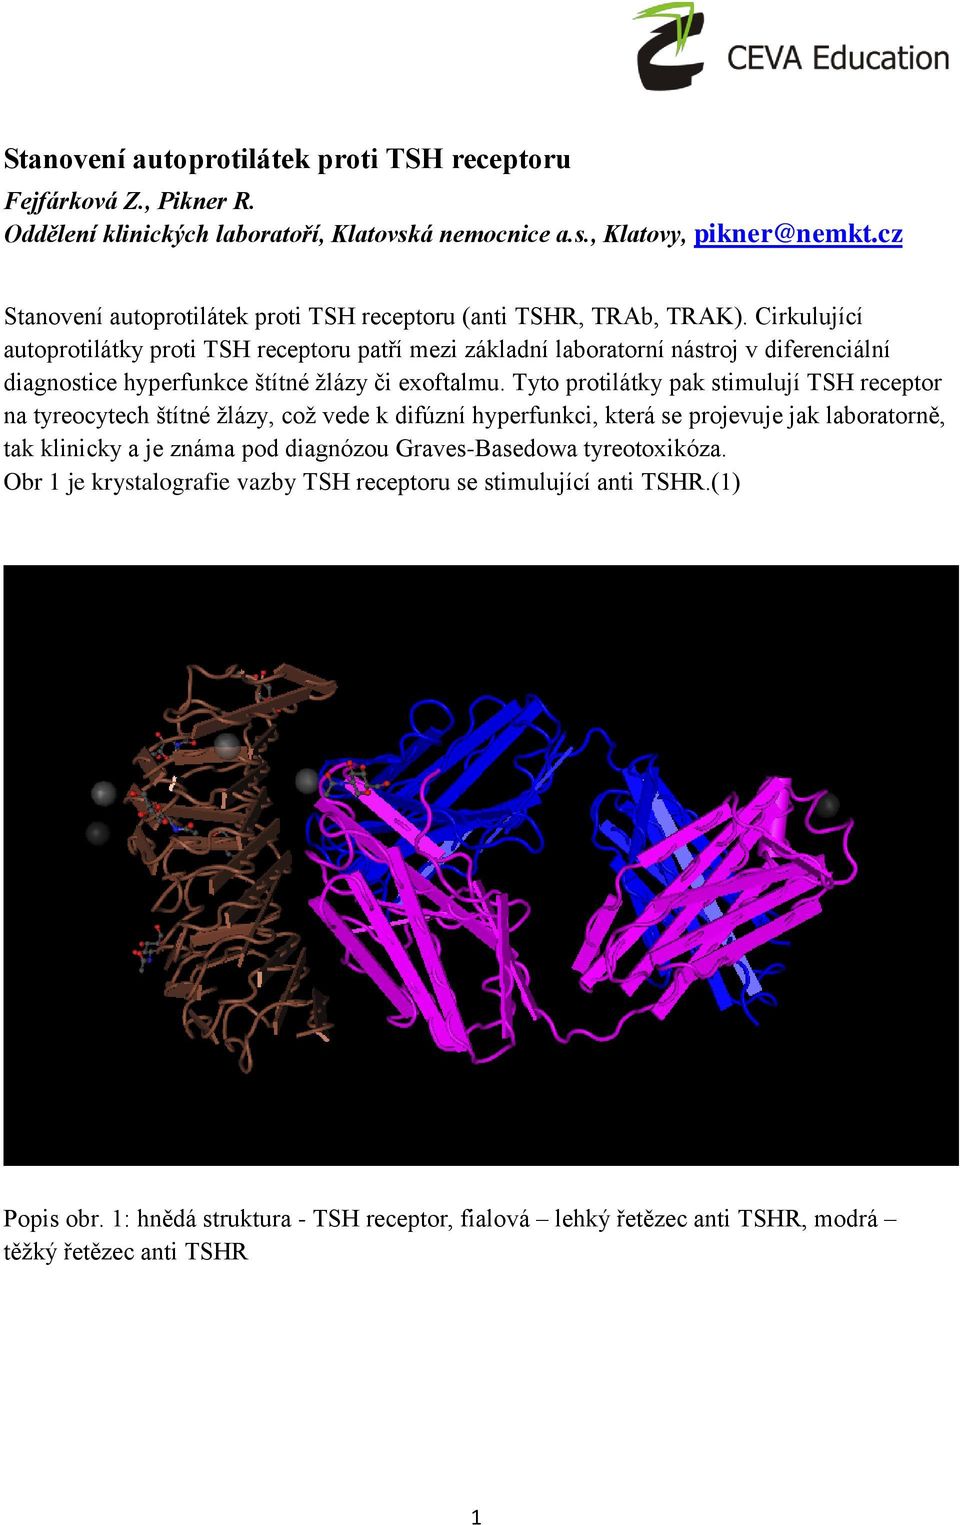 Cirkulující autoprotilátky proti TSH receptoru patří mezi základní laboratorní nástroj v diferenciální diagnostice hyperfunkce štítné žlázy či exoftalmu.